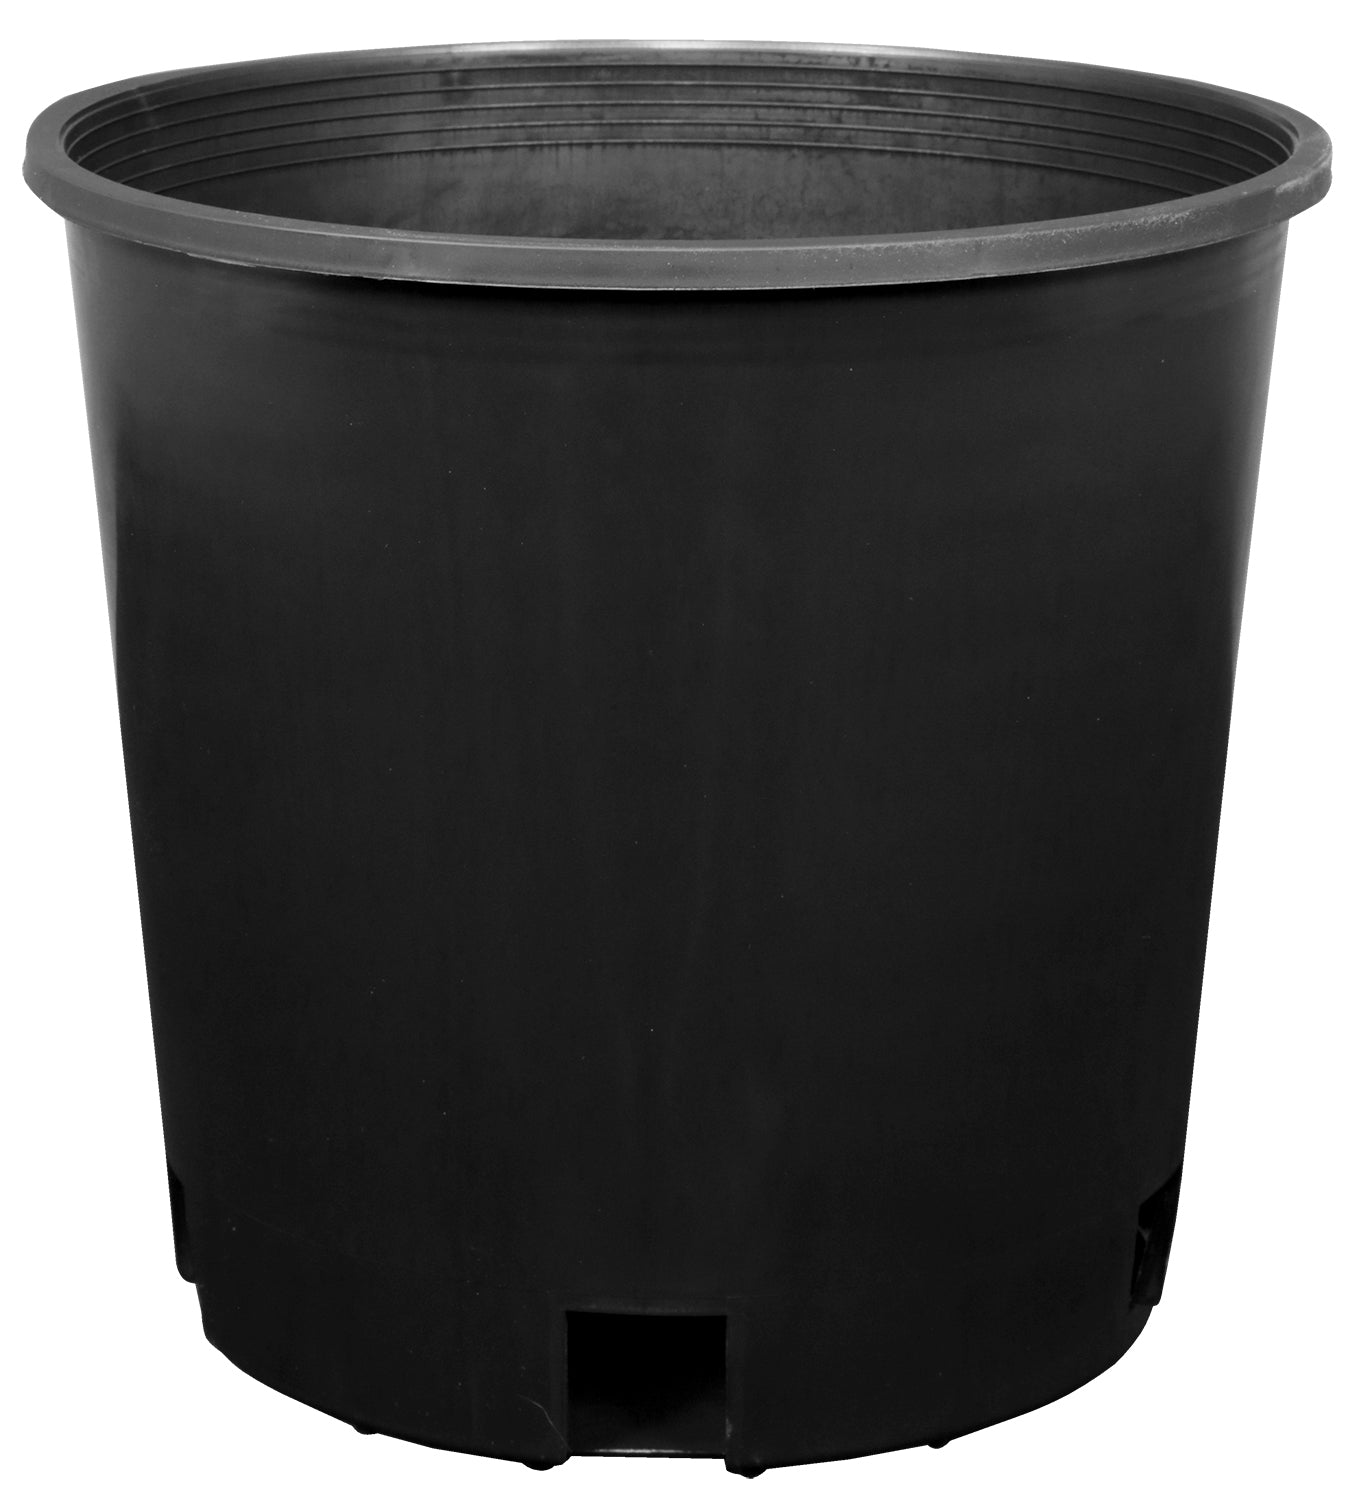 Gro Pro Premium Tall Nursery Pot 3 Gallon